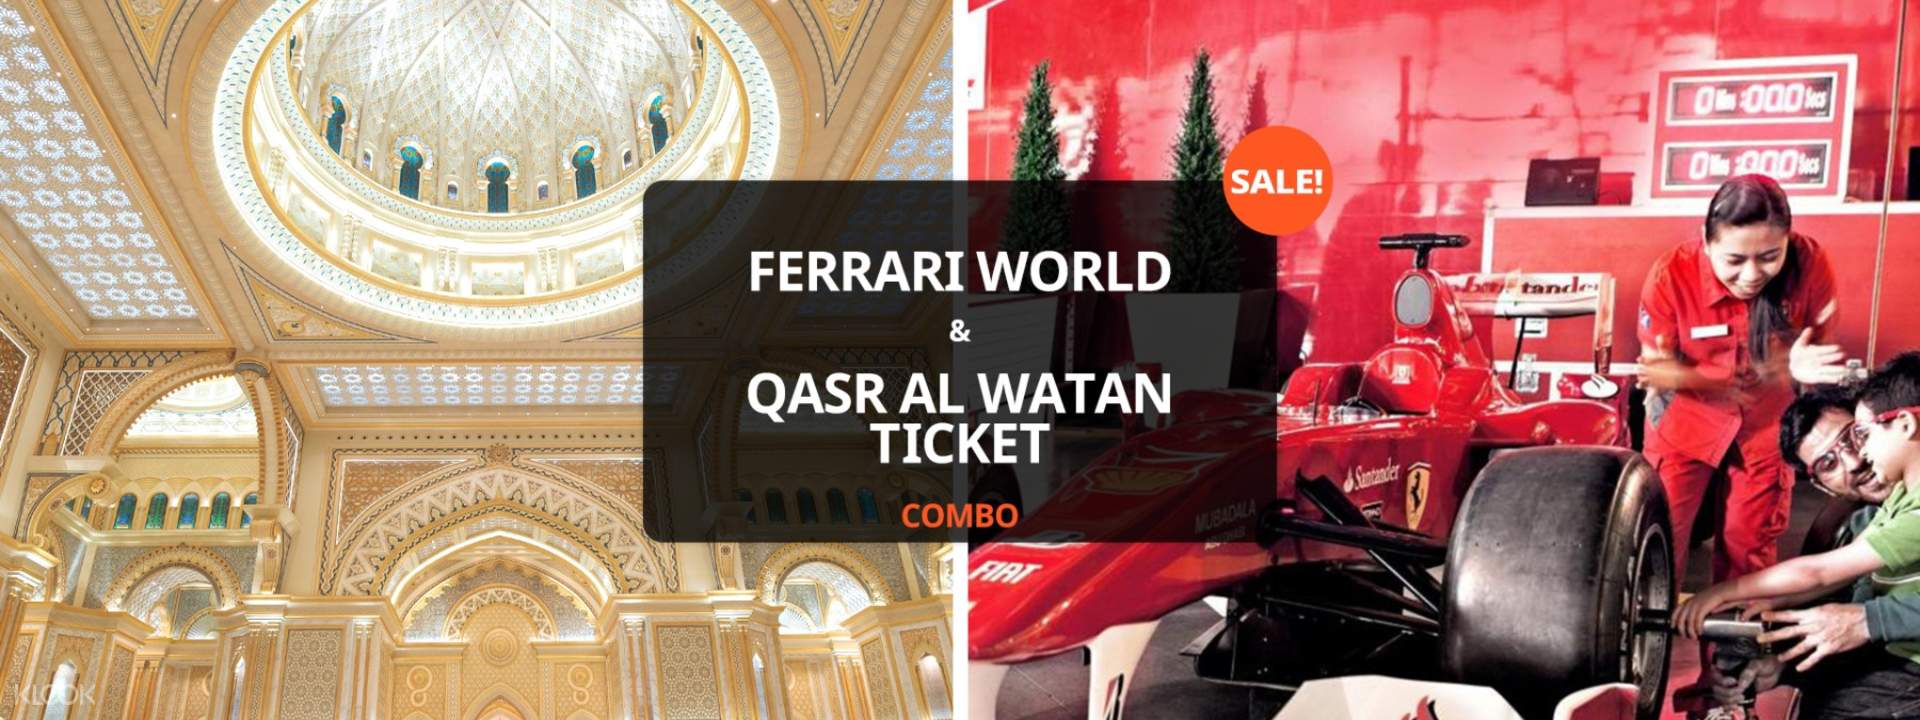 Ferrari World and Qasr Al Watan Ticket Combo